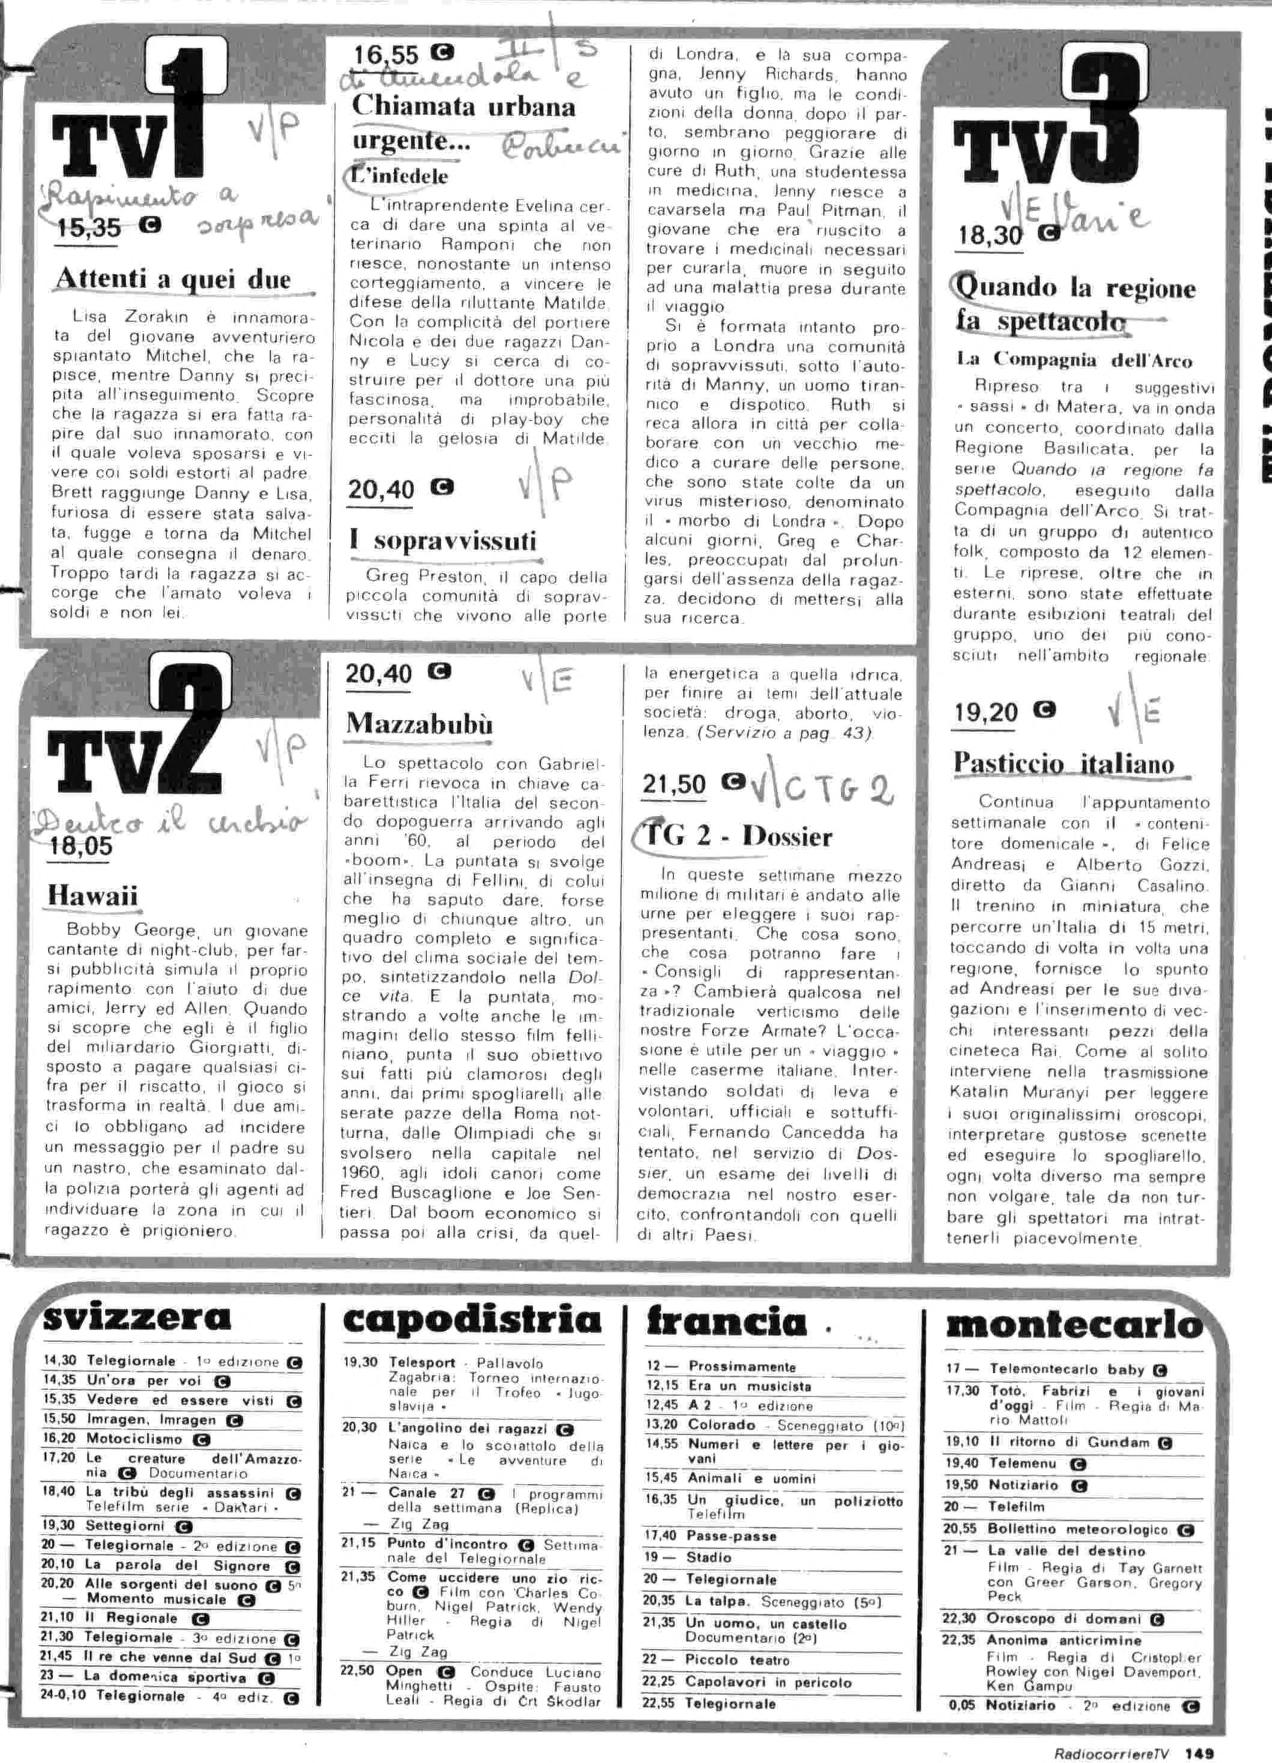 RC-1980-20_0148.jp2&id=Radiocorriere-198